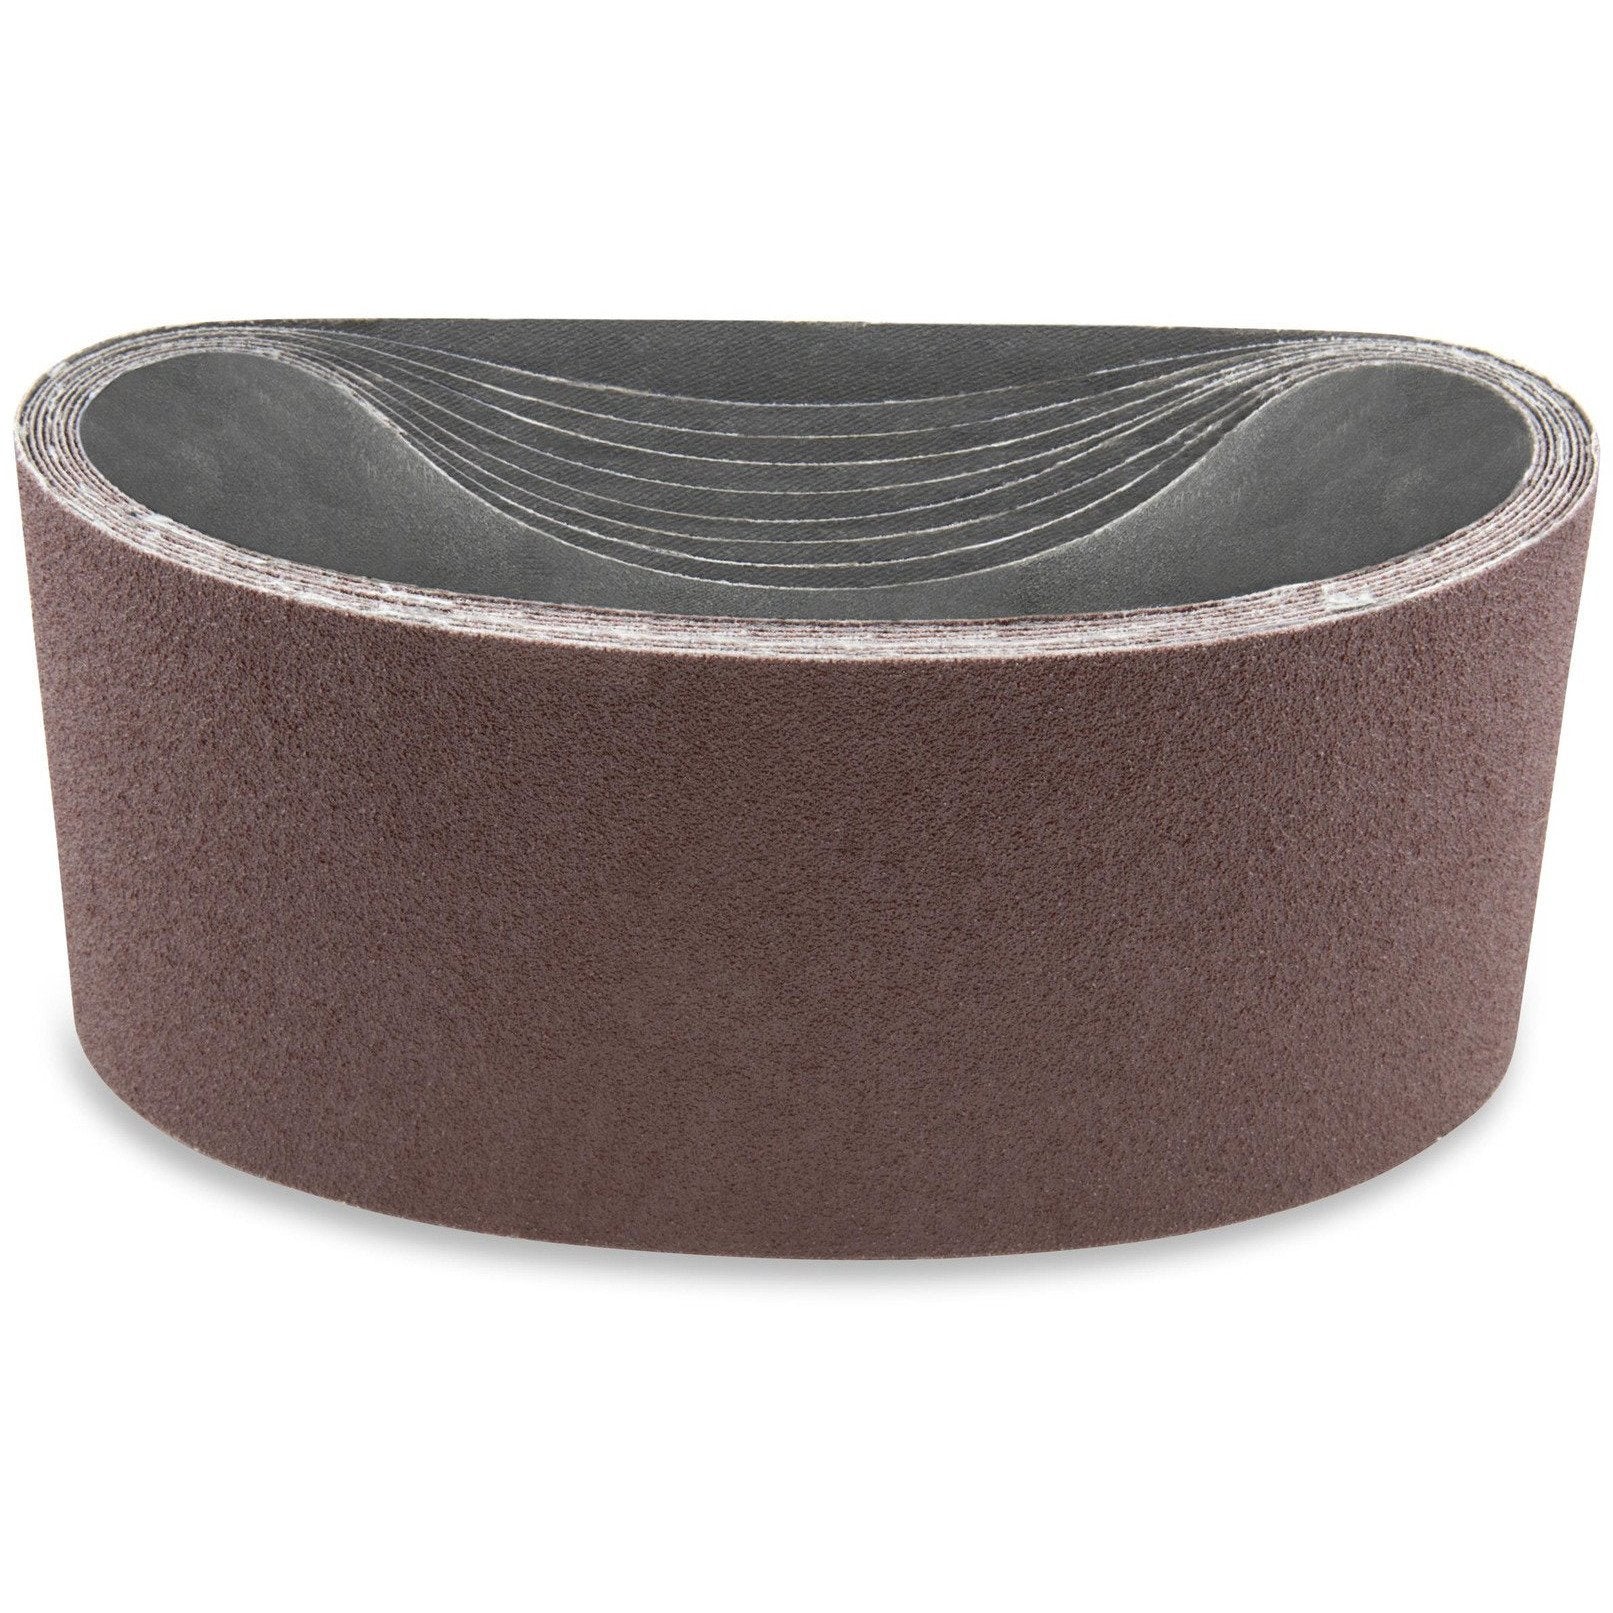 4 X 24 Inch Aluminum Oxide Sanding Belts, 3 Pack - Red Label Abrasives